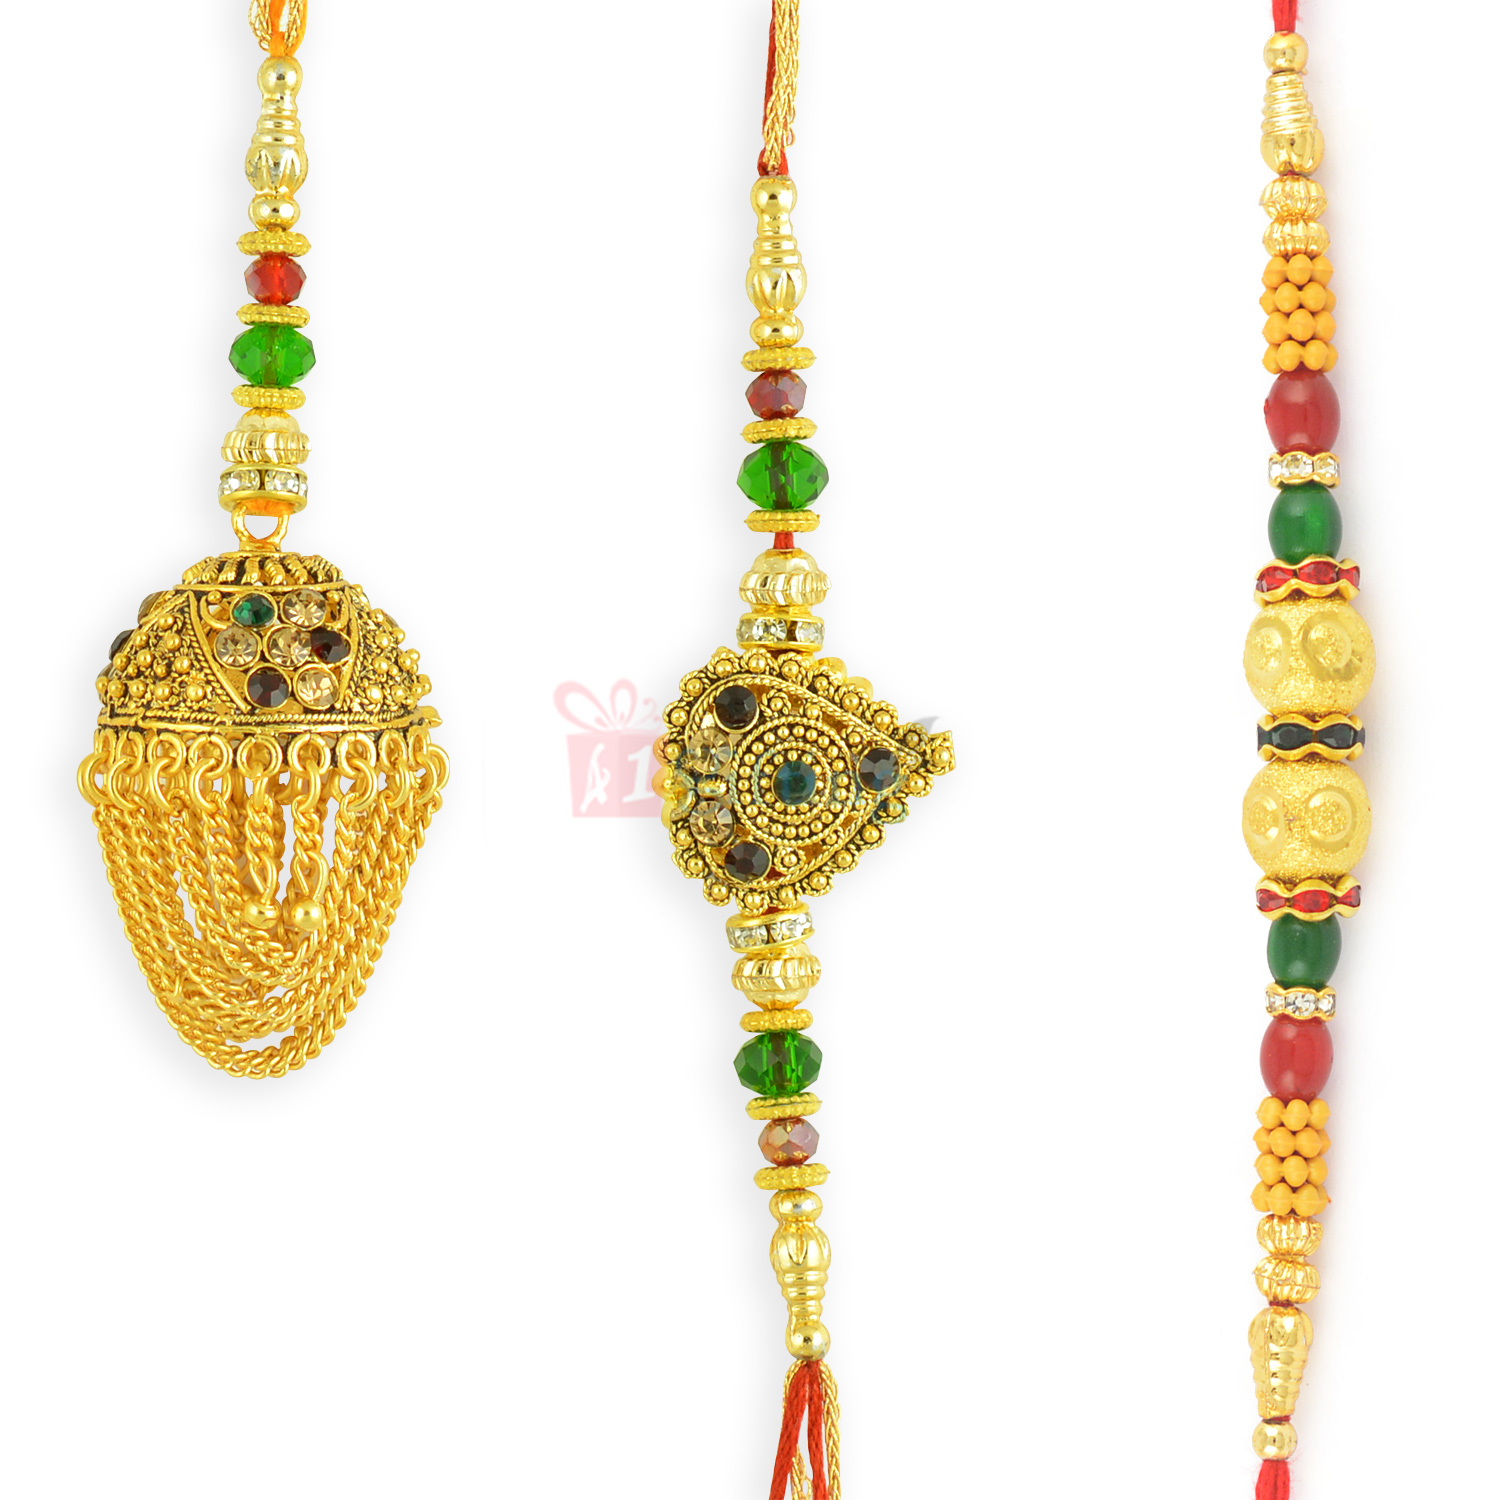 Appealing Rajasthani Style Golden Theme Rakhi Combo of 3